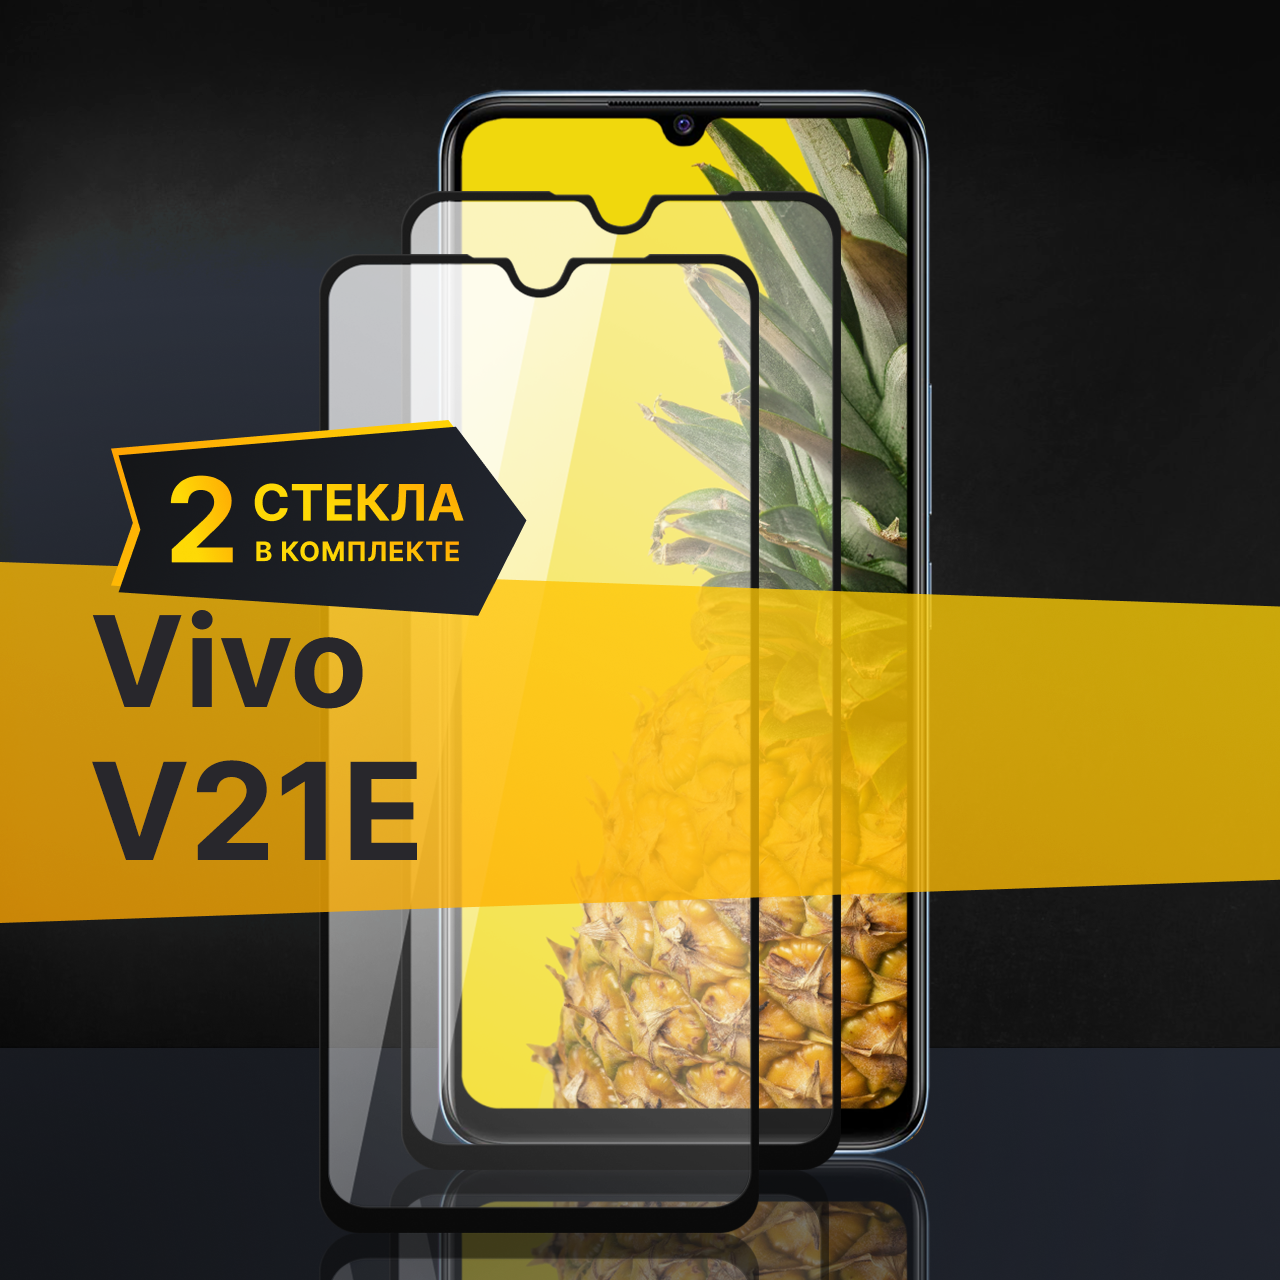 Комплект 2 шт. Противоударное защитное стекло для телефона Vivo V21e / Полноклеевое 3D стекло с олеофобным покрытием на смартфон Виво В21е /